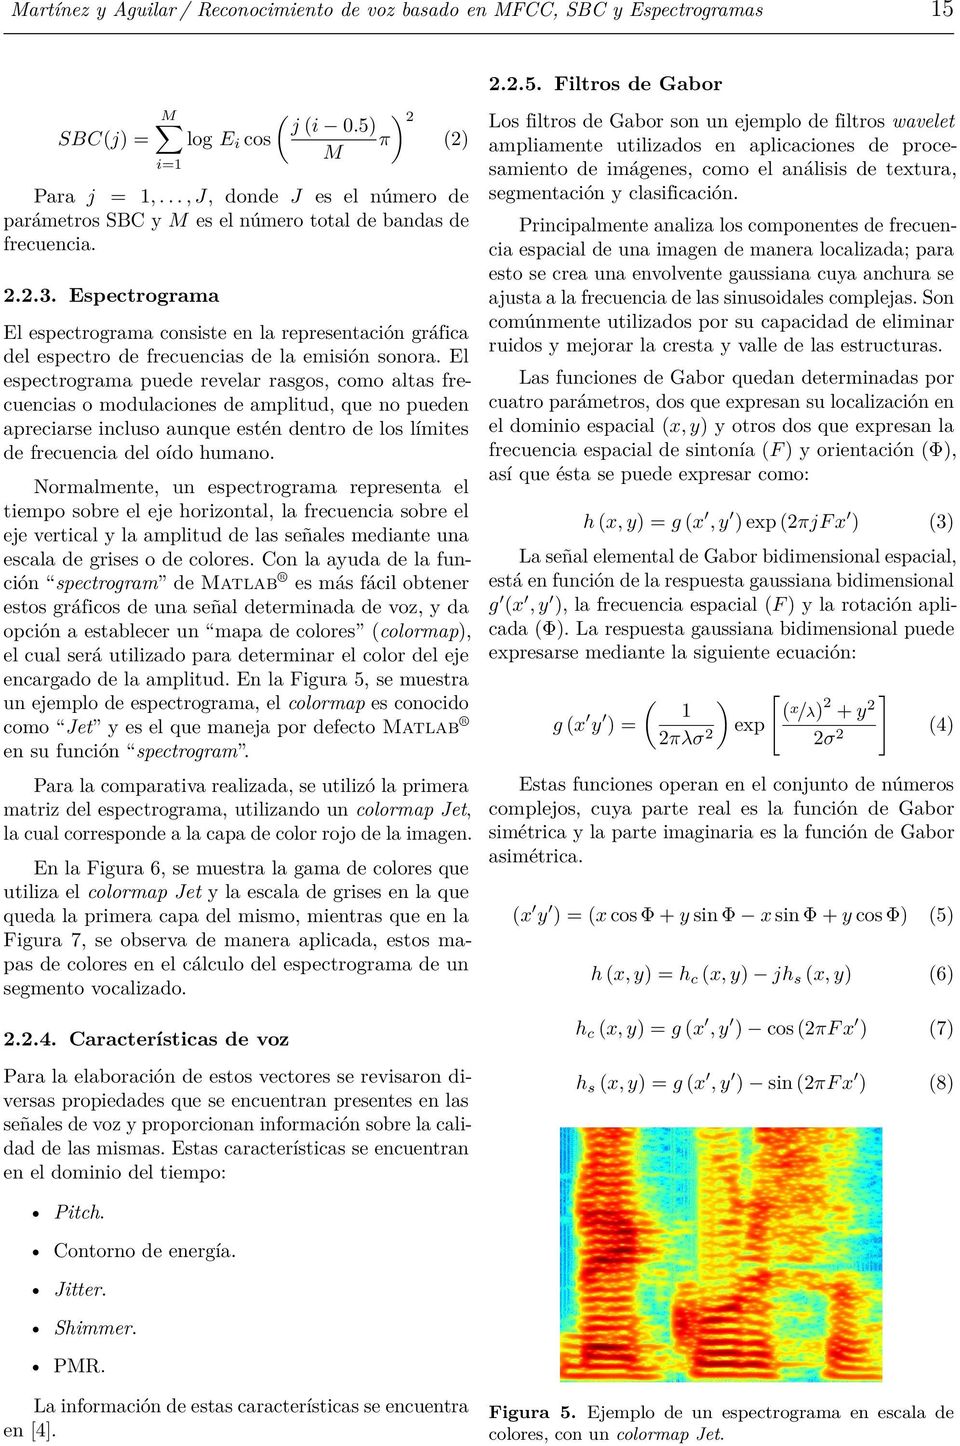 Espectrograma El espectrograma consiste en la representación gráfica del espectro de frecuencias de la emisión sonora.